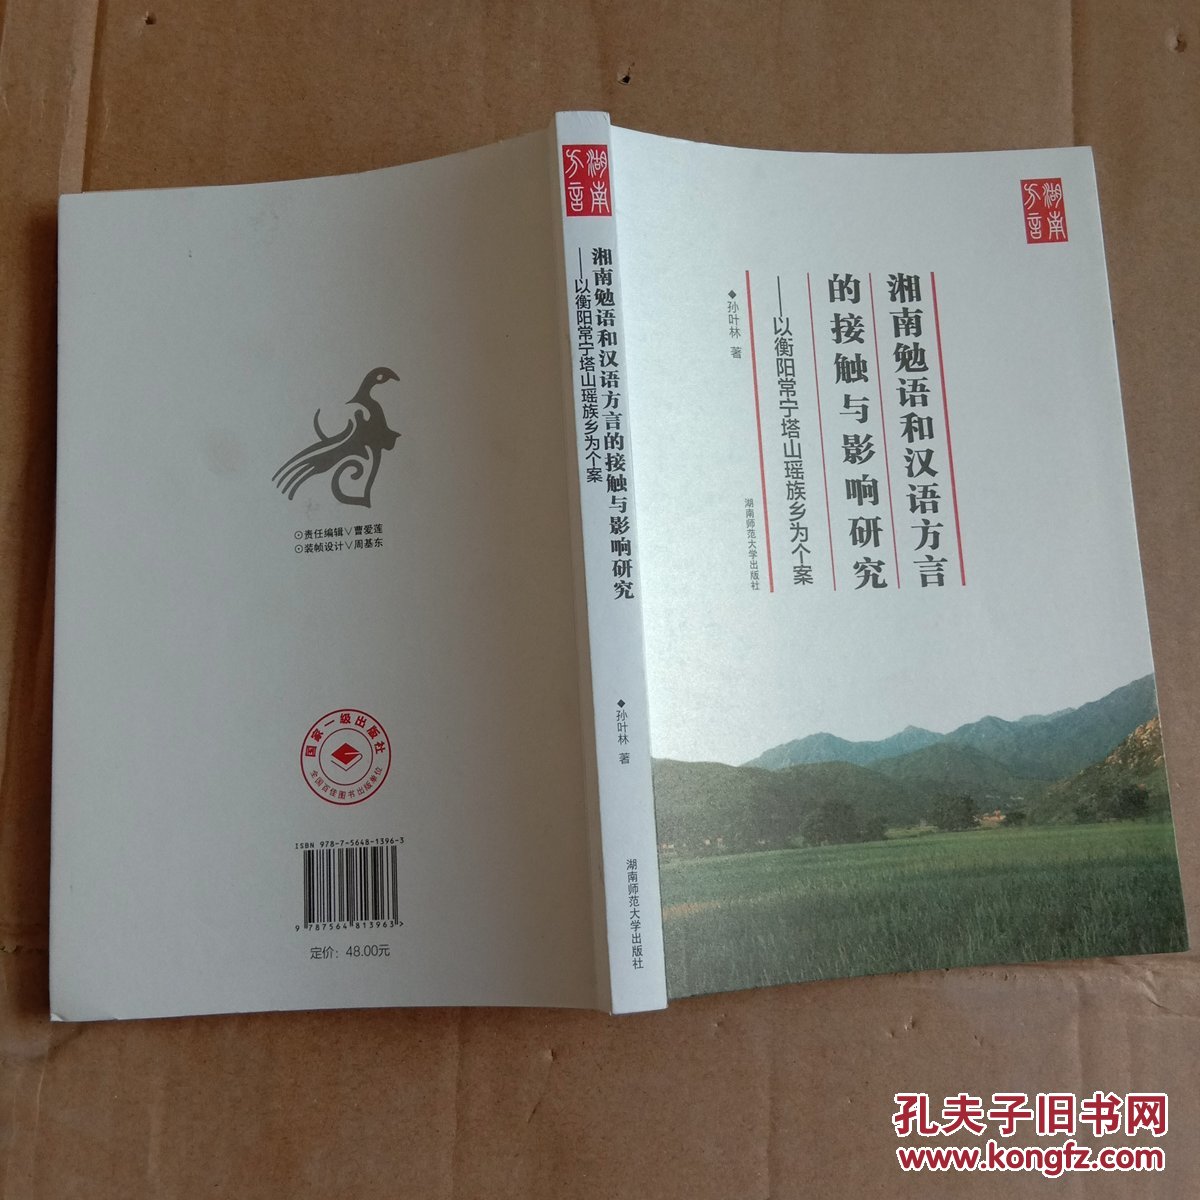 湖南勉语和汉语方言的接触与影响研究 以衡阳常宁塔山瑶族乡为个案